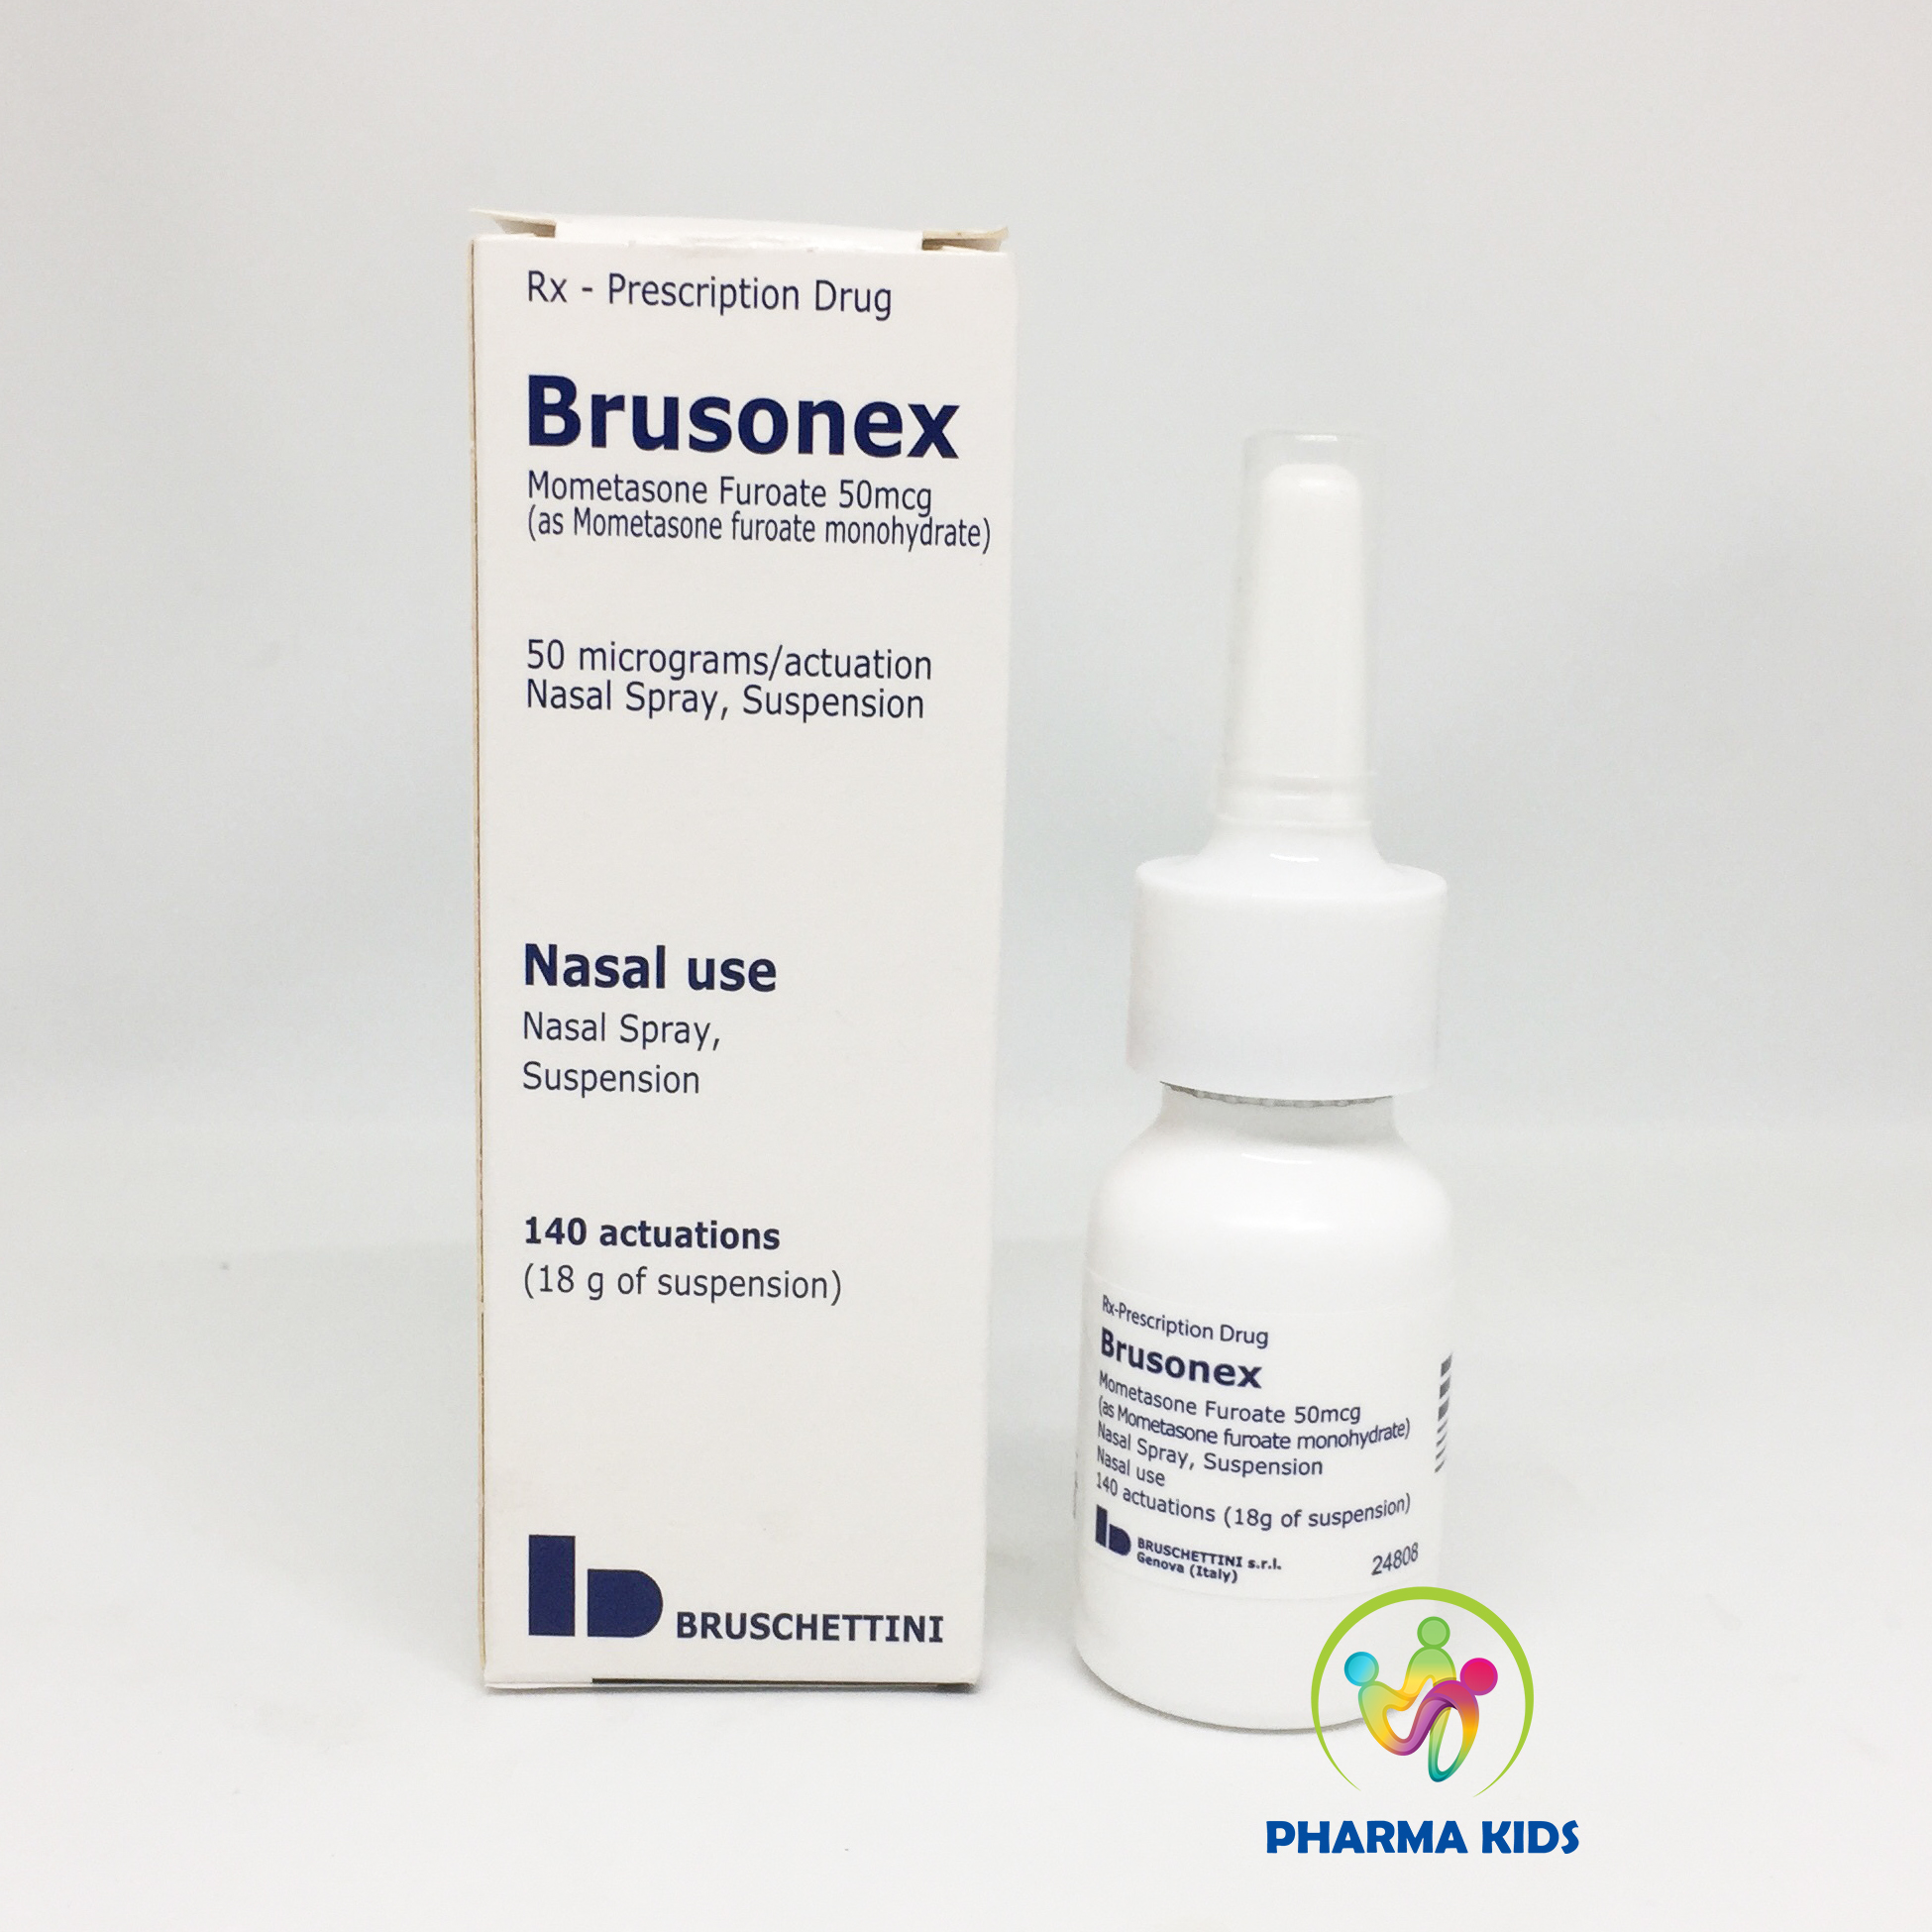 Brusonex